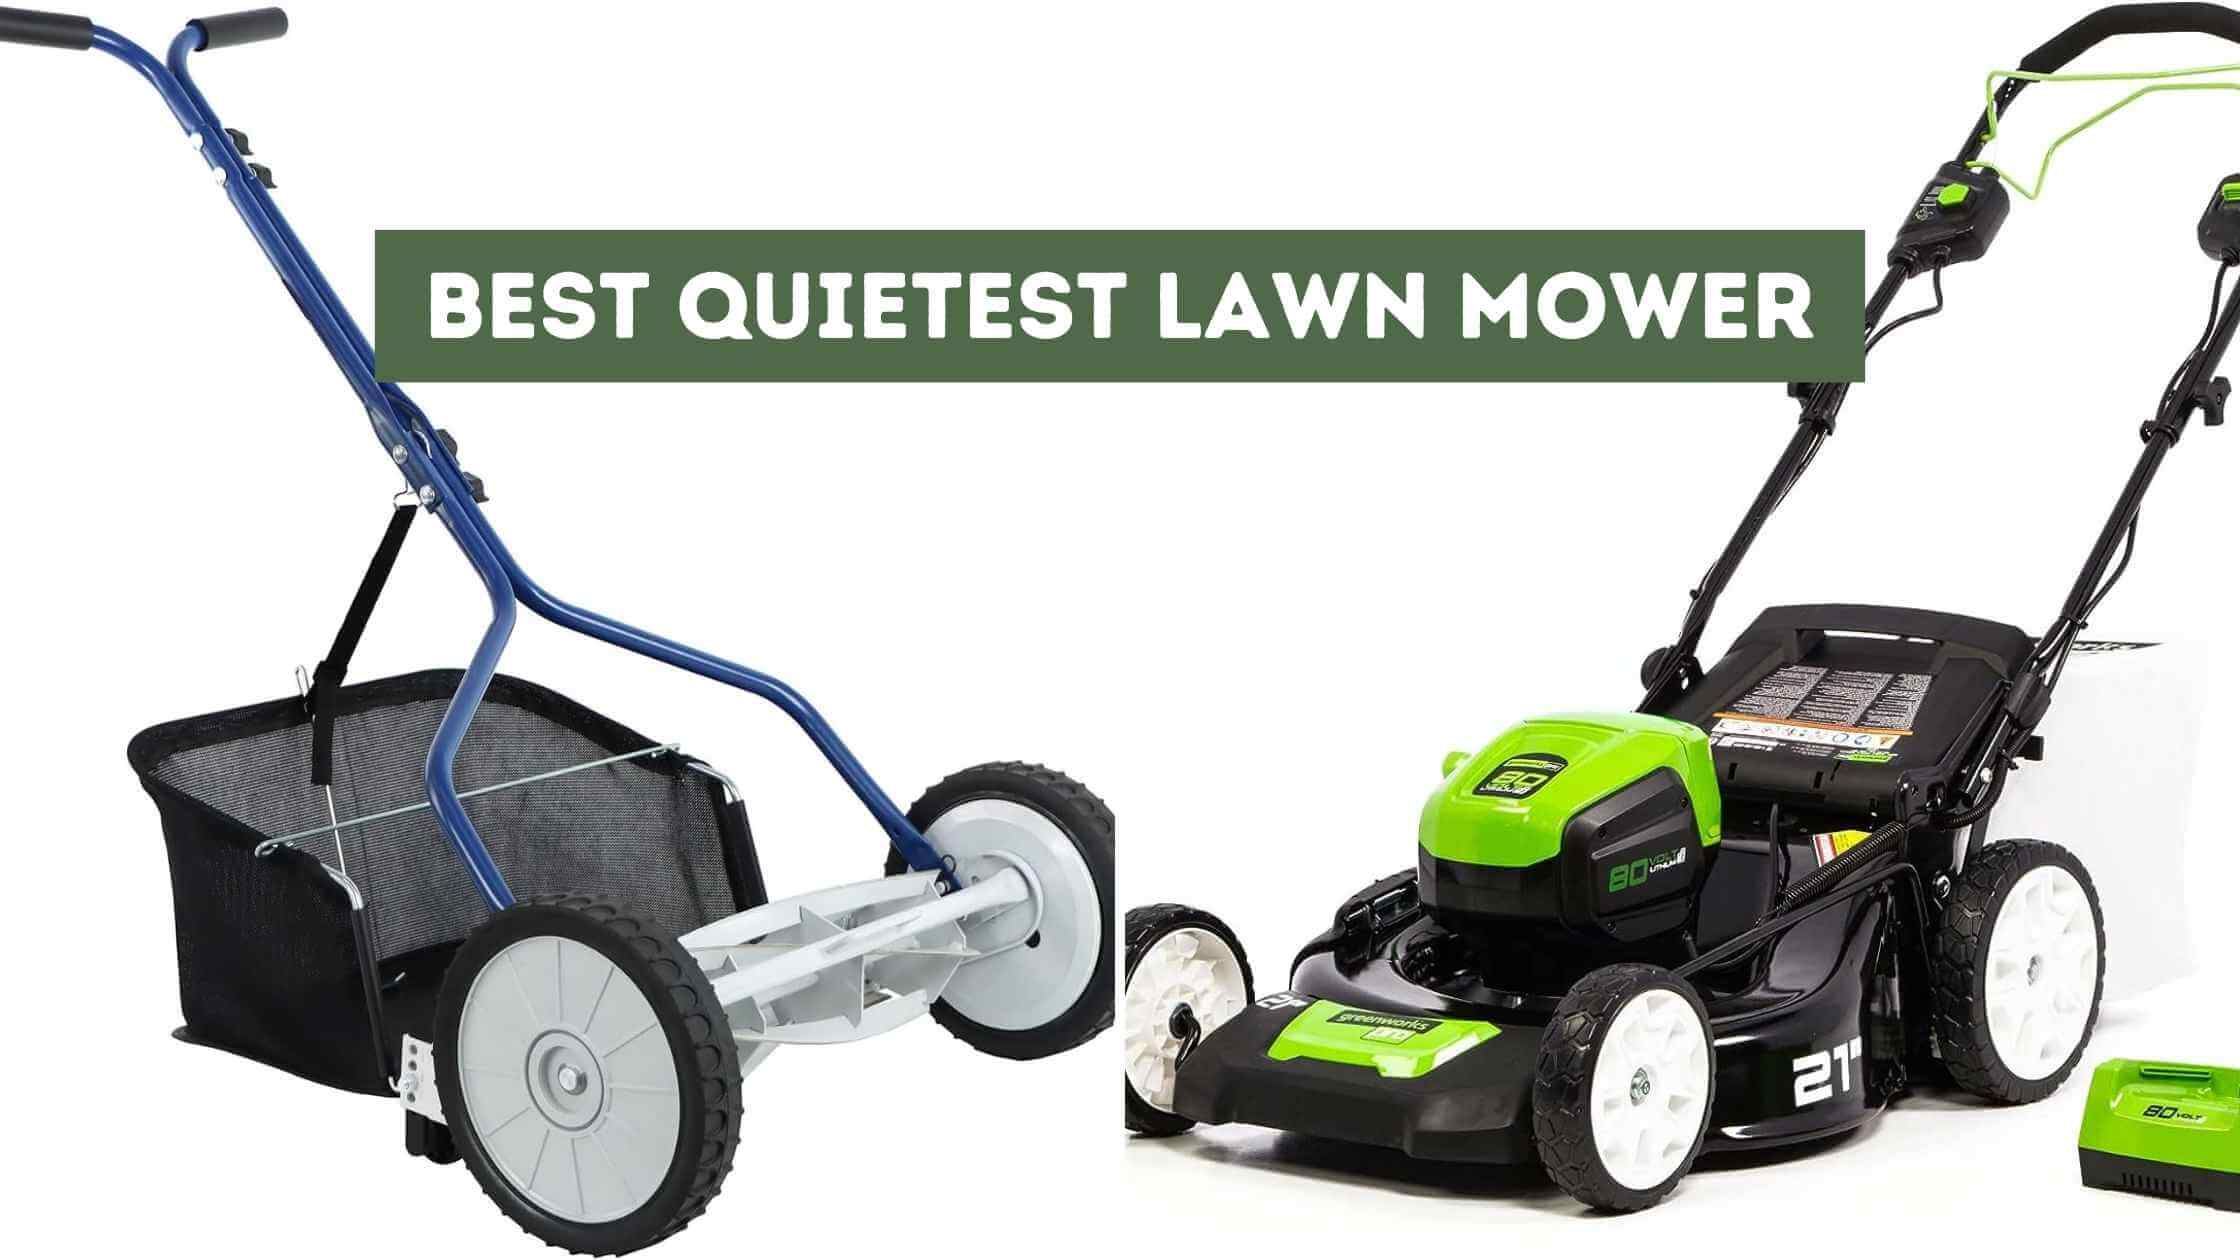 Best Quietest Lawn Mower